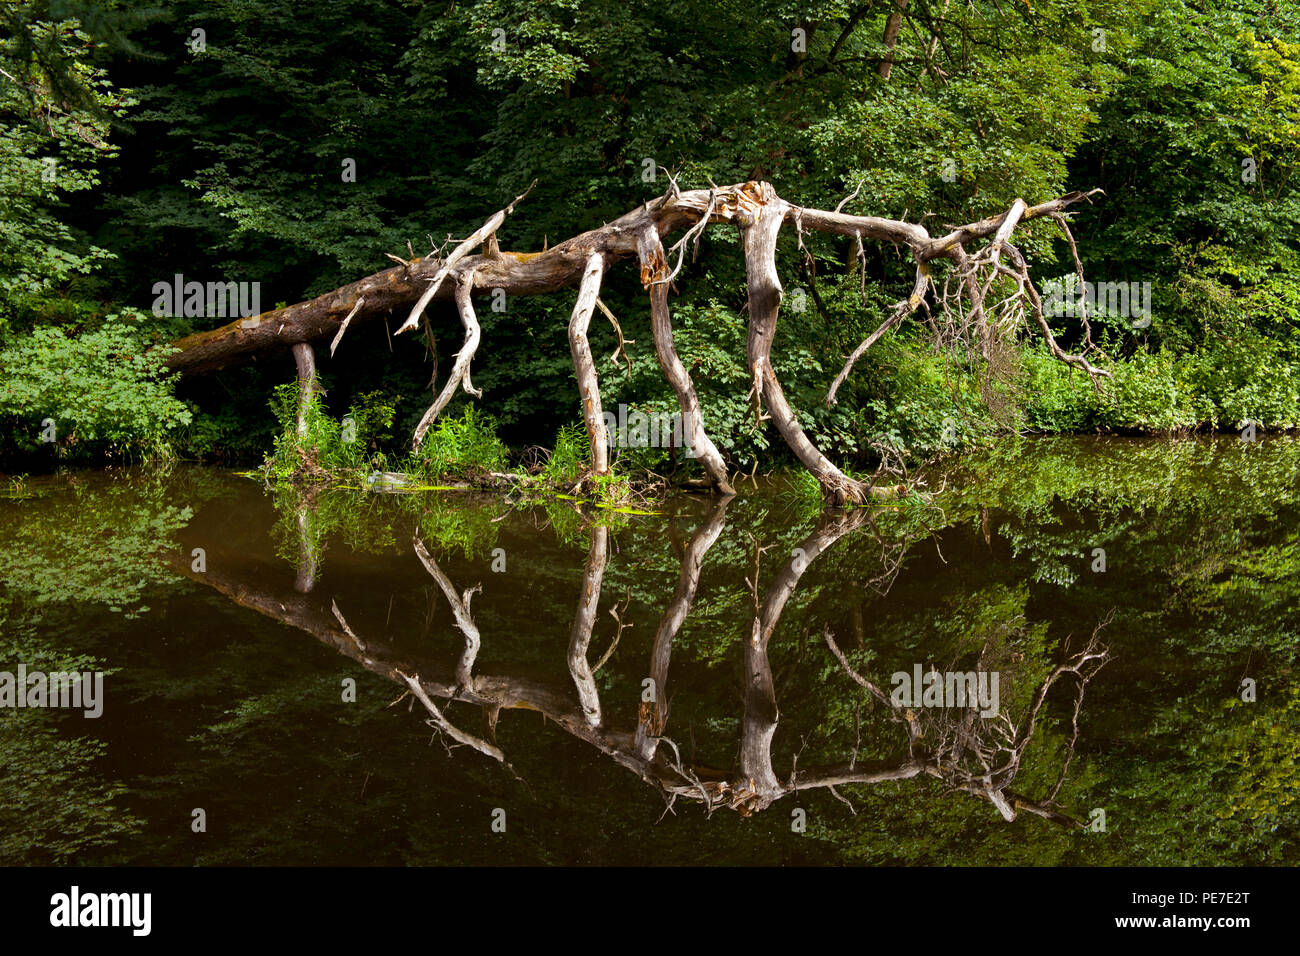 River Almond, gefallenen Baum, ist tot sieht aus wie eine prähistorische Monster, wie Dinosaurier, East Calder, West Lothian, Schottland, Großbritannien Stockfoto